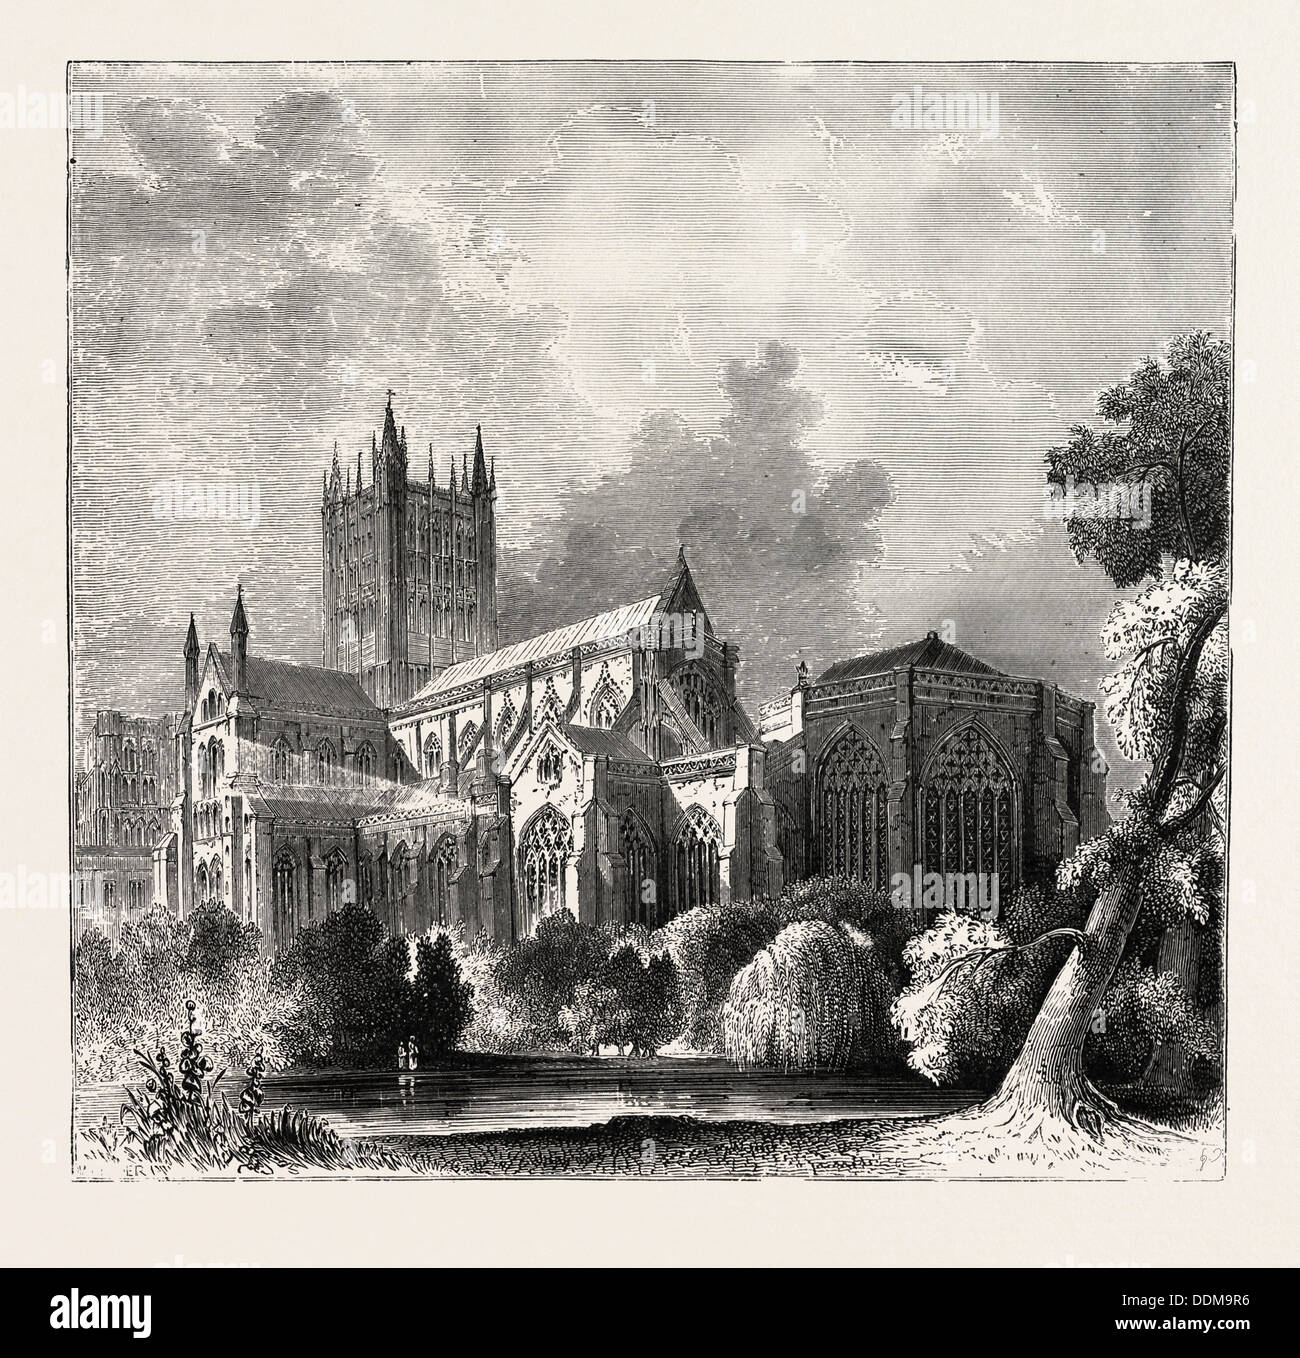 Cattedrale di Wells, gran parte della struttura è il primo stile inglese, notevolmente arricchita dai suoi aspetti scultoreo Foto Stock